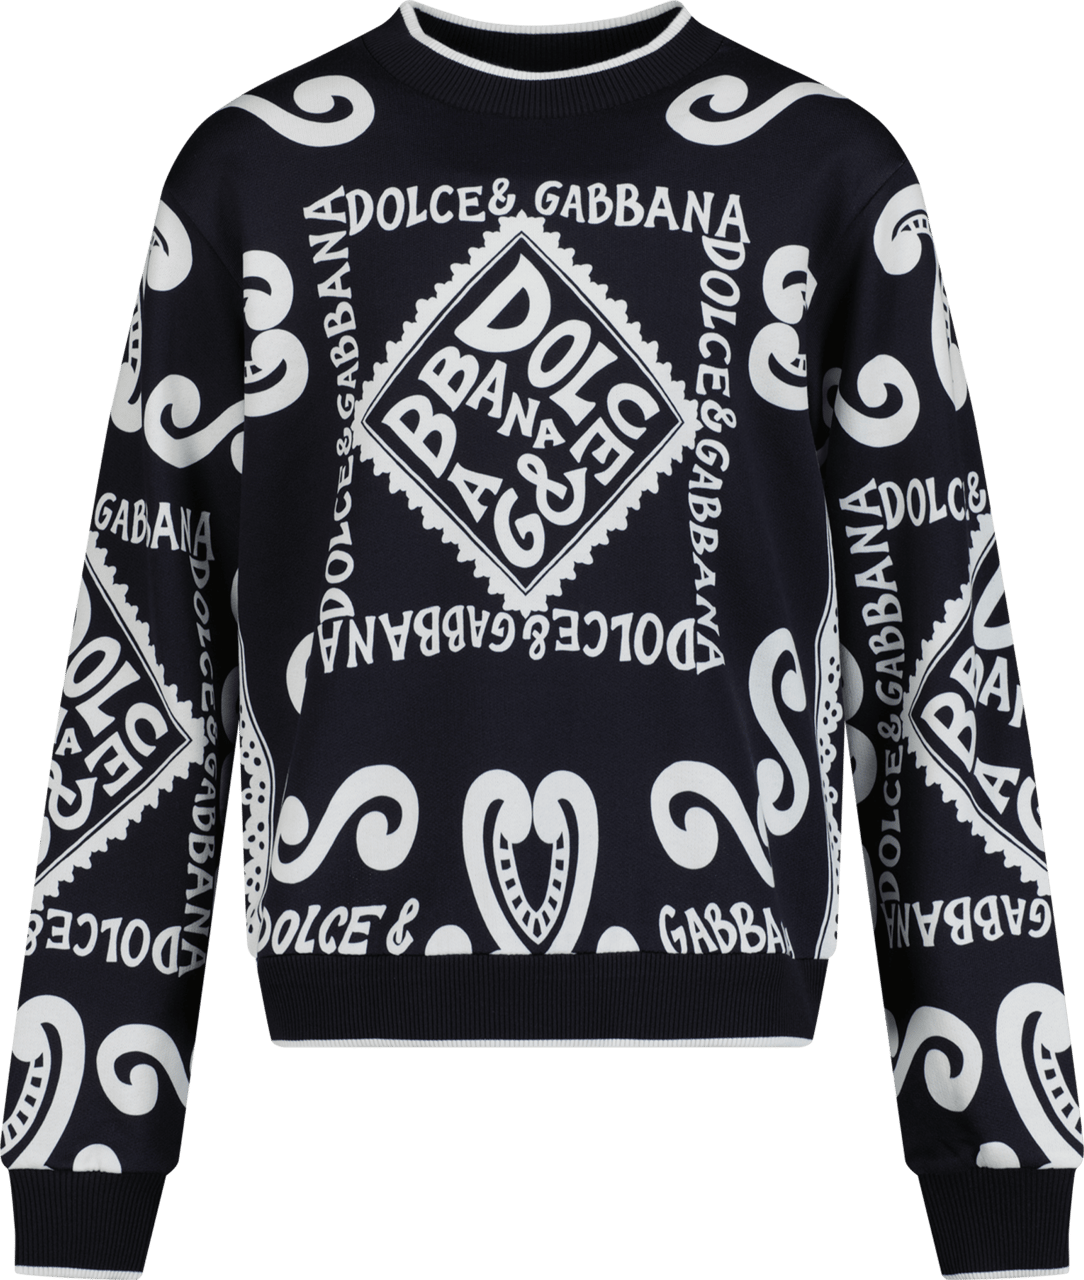 Dolce & Gabbana Dolce & Gabbana Kinder Trui Navy Blauw